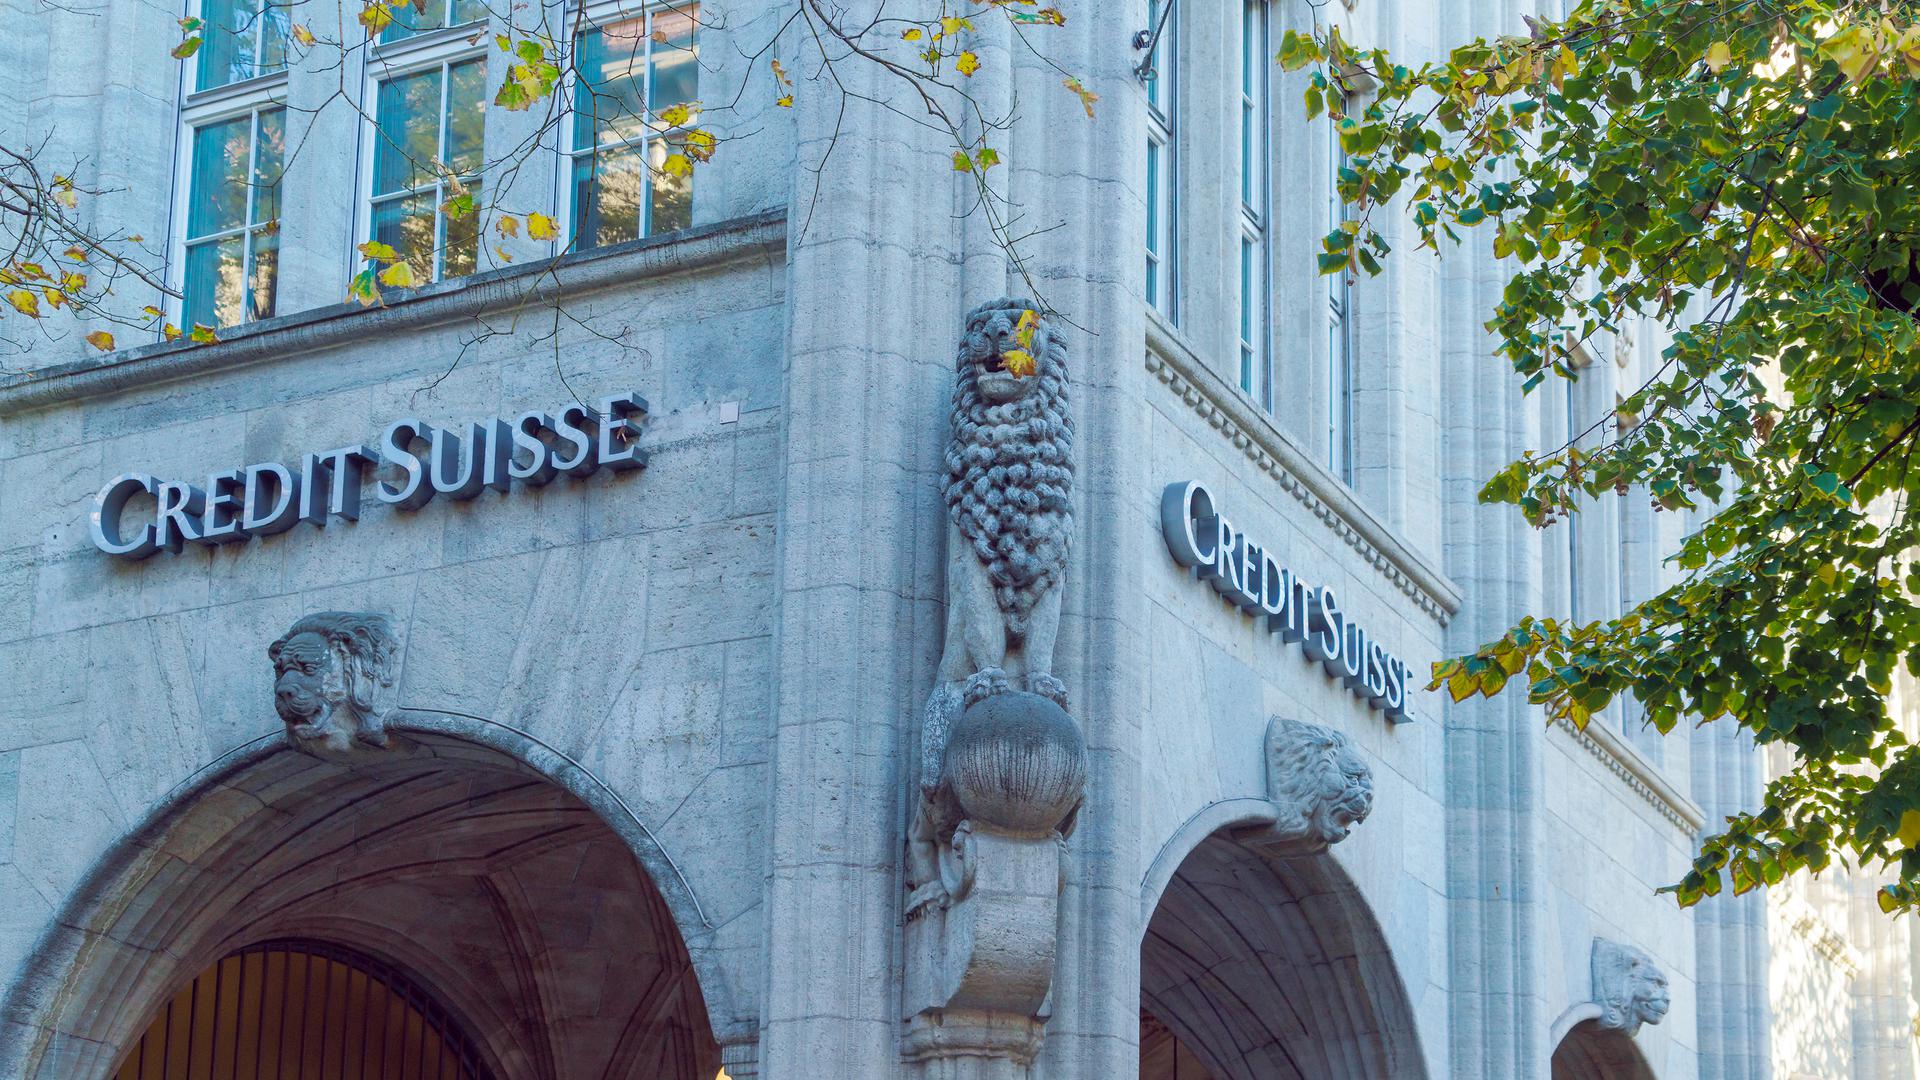 Credit Suisse's headquarters in Zurich